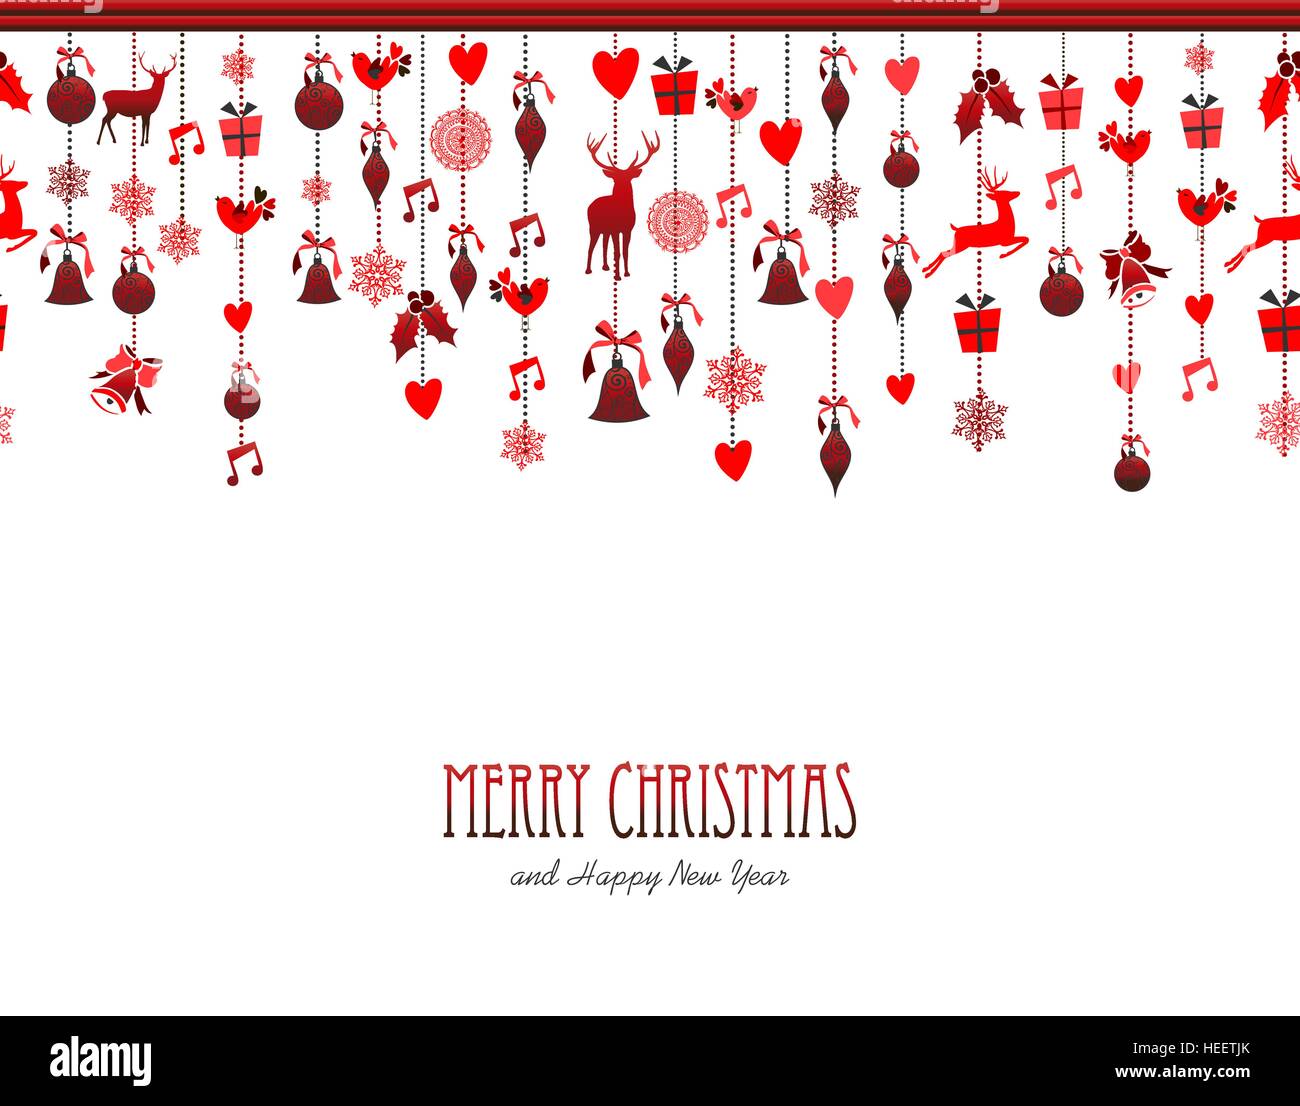 Frohe Weihnachten, frohes neues Jahr rot Urlaub Dekoration mit Hirsch, Holly, Vogel, Schnee und Geschenk-Elementen. Ideal für Weihnachten Grusskarte, Einladung zu einem Ereignis Stock Vektor